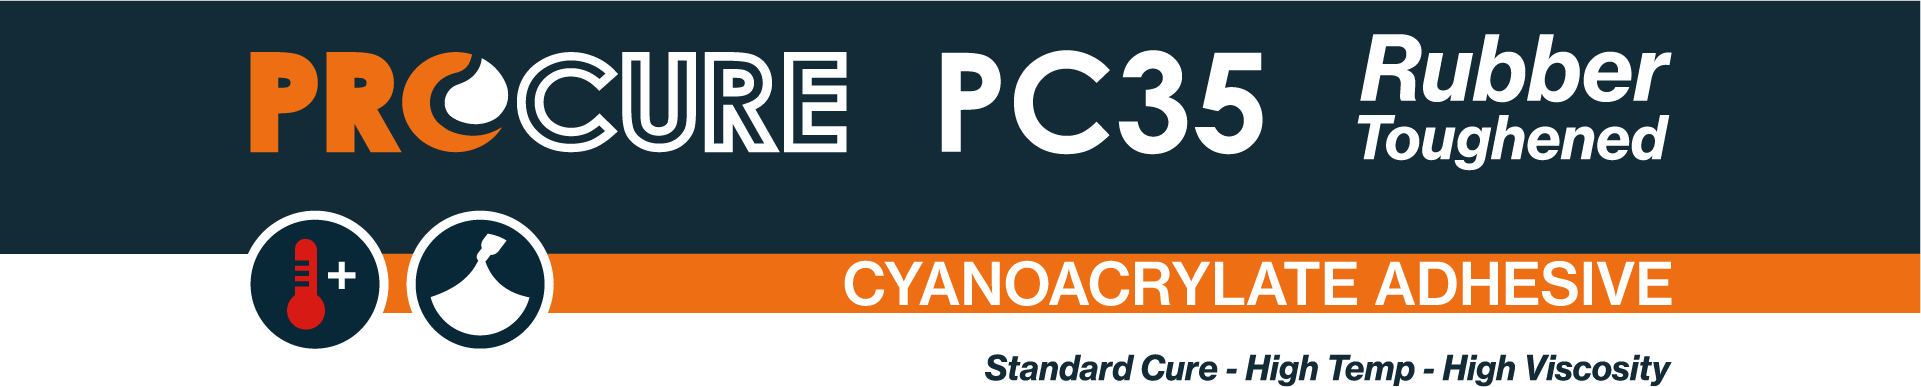 Procure PC35 Rubber Toughened Cyanoacrylate Adhesive.